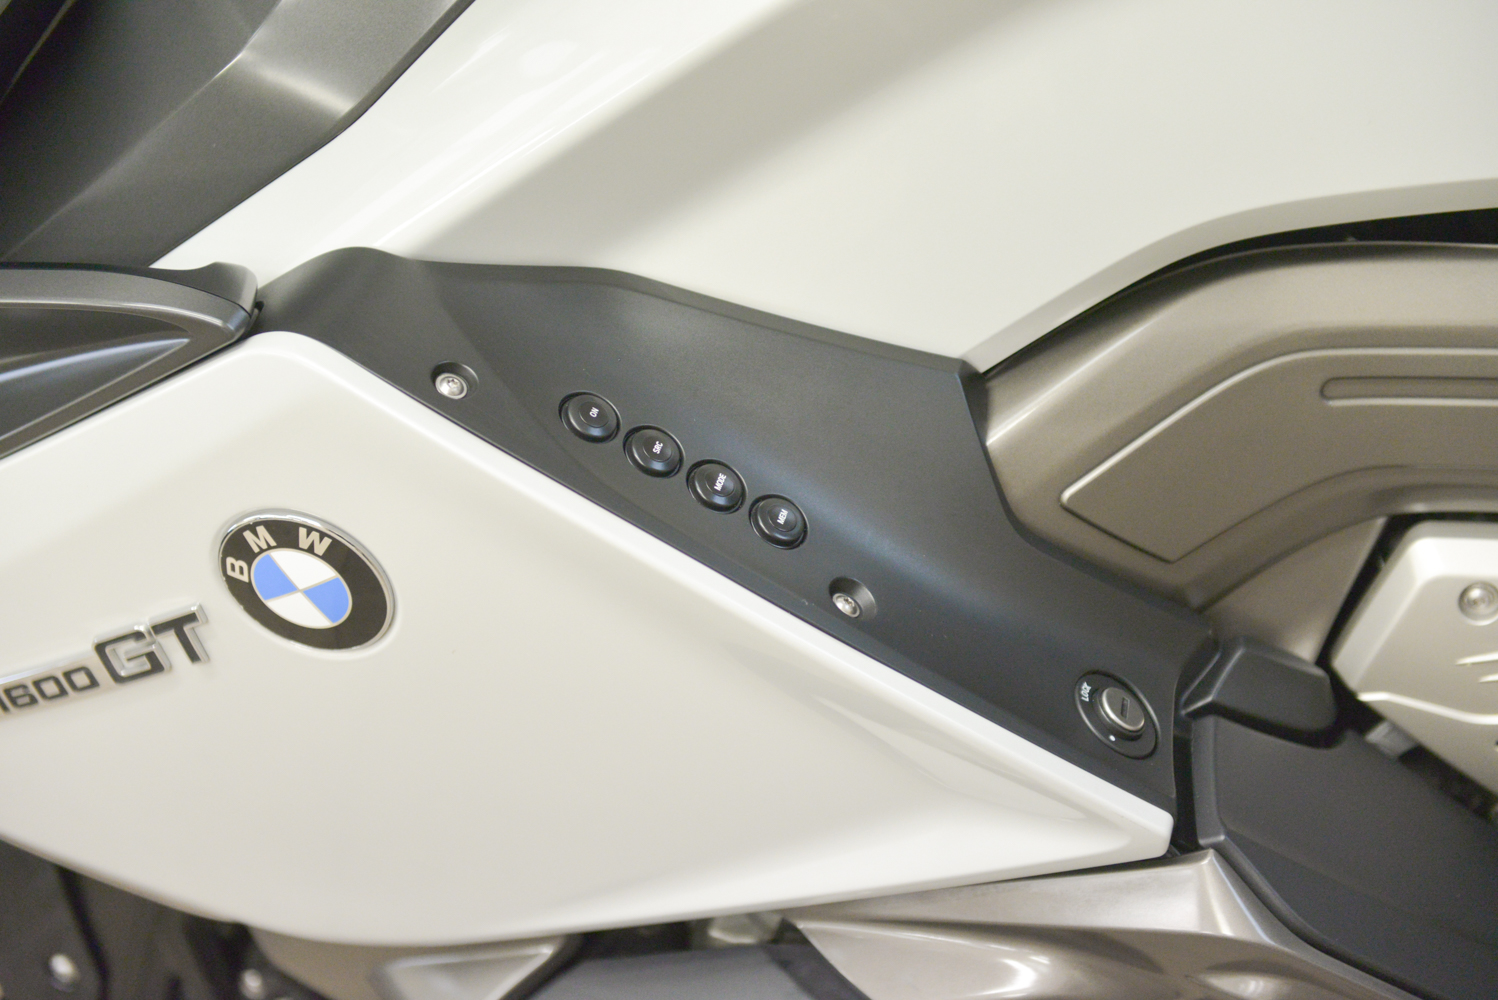 2011 BMW K 1600 GT